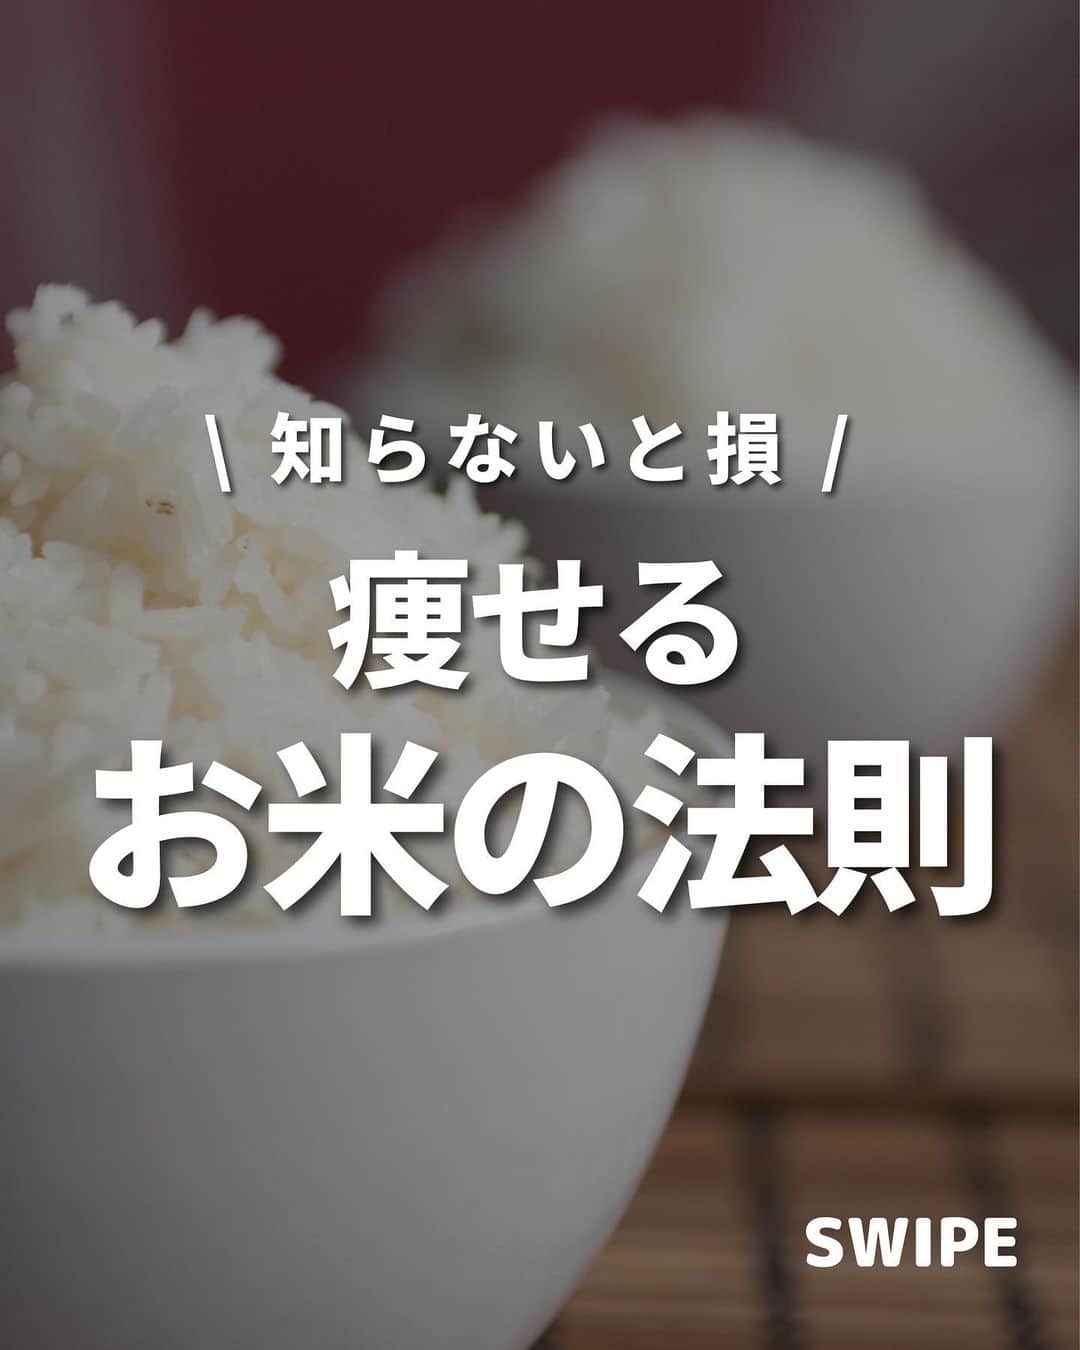 西村紗也香のインスタグラム：「@_sayakanishimura_ 👈🏻食べて痩せるダイエット💕 ⁡ 【お米の法則】 ⁡ お米は食べ過ぎれば太るけど 適量であればむしろ食べた方が痩せる🙆🏻‍♀️ ⁡ 1食100g🍚は 運動なしでも、在宅ワークでも 生きているだけで消費されるエネルギーだから これ以上減らすことはおすすめしません🥺 ⁡ 「こんな時はどうしたらいい？」 「ここが分からない」 などあれば気軽にコメントしてください🫶🏻 ⁡ -------------------- ⁡ ダイエットとリバウンドを繰り返す日々に 病みすぎた結果…過食嘔吐から拒食を経験❤️‍🩹 身体の仕組みと栄養の仕組みを学び 3食炭水化物を食べて-10kgに成功🍚 今は好きなものを食べてリバウンドなし💕 ⁡ 自分の経験と学びを活かして 今まで500名以上の方々に ダイエット、摂食障害克服、便秘解消など 栄養コンサルティングを行っています☺️ ⁡ -------------------- ⁡ @_sayakanishimura_ このアカウントでは ダイエット、レシピ、家トレ、美容etc... ただ痩せておわり！ではなく 内面も外面もきれいになれるような情報を発信🫶🏻 ぜにフォローお待ちしてます💕💕 ⁡ -------------------- ⁡ #ダイエット #ダイエット仲間募集 #インスタダイエット #ビフォーアフター #痩せる #食べて痩せる #美容 #リカバリー #リバウンド」